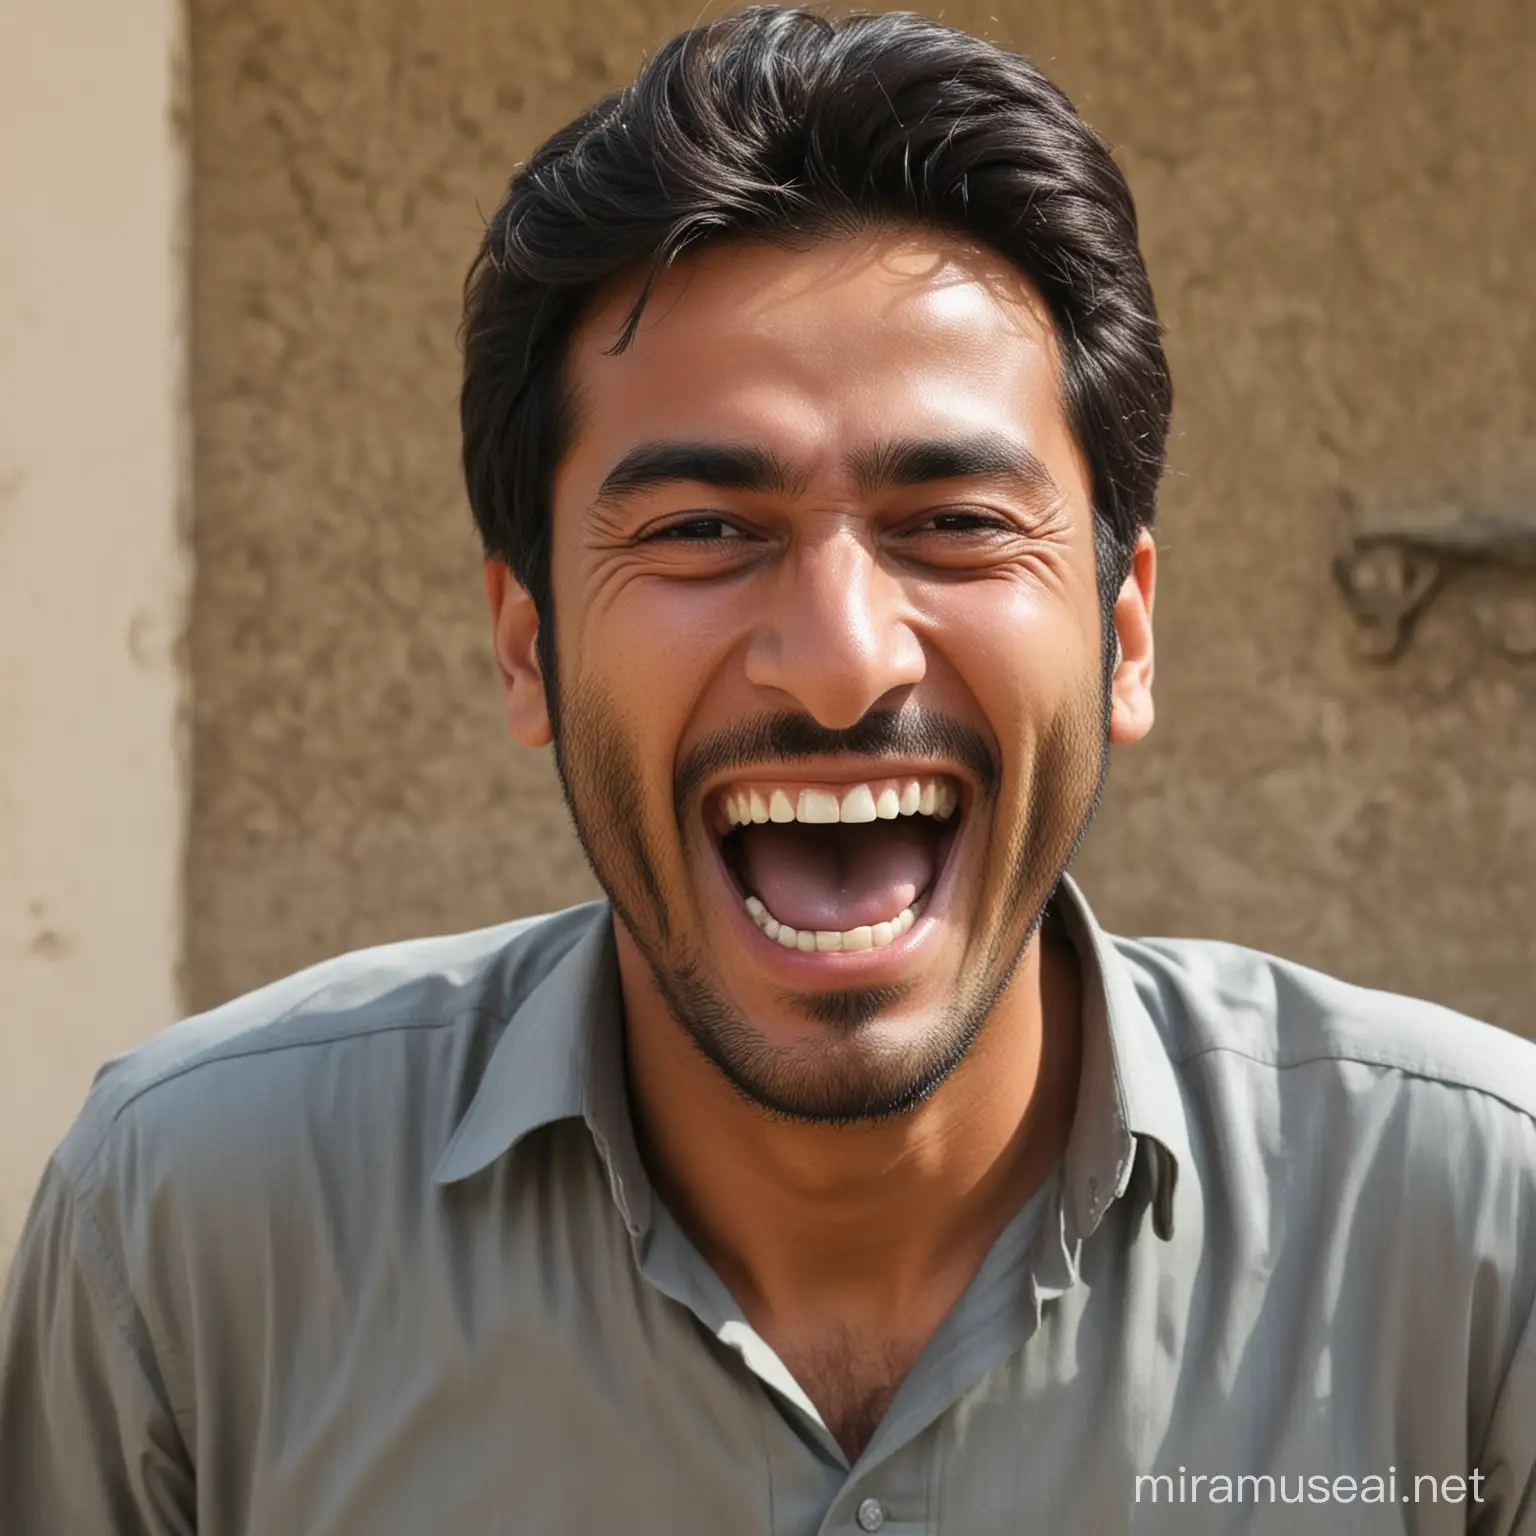 Pakistani man laughing like hell